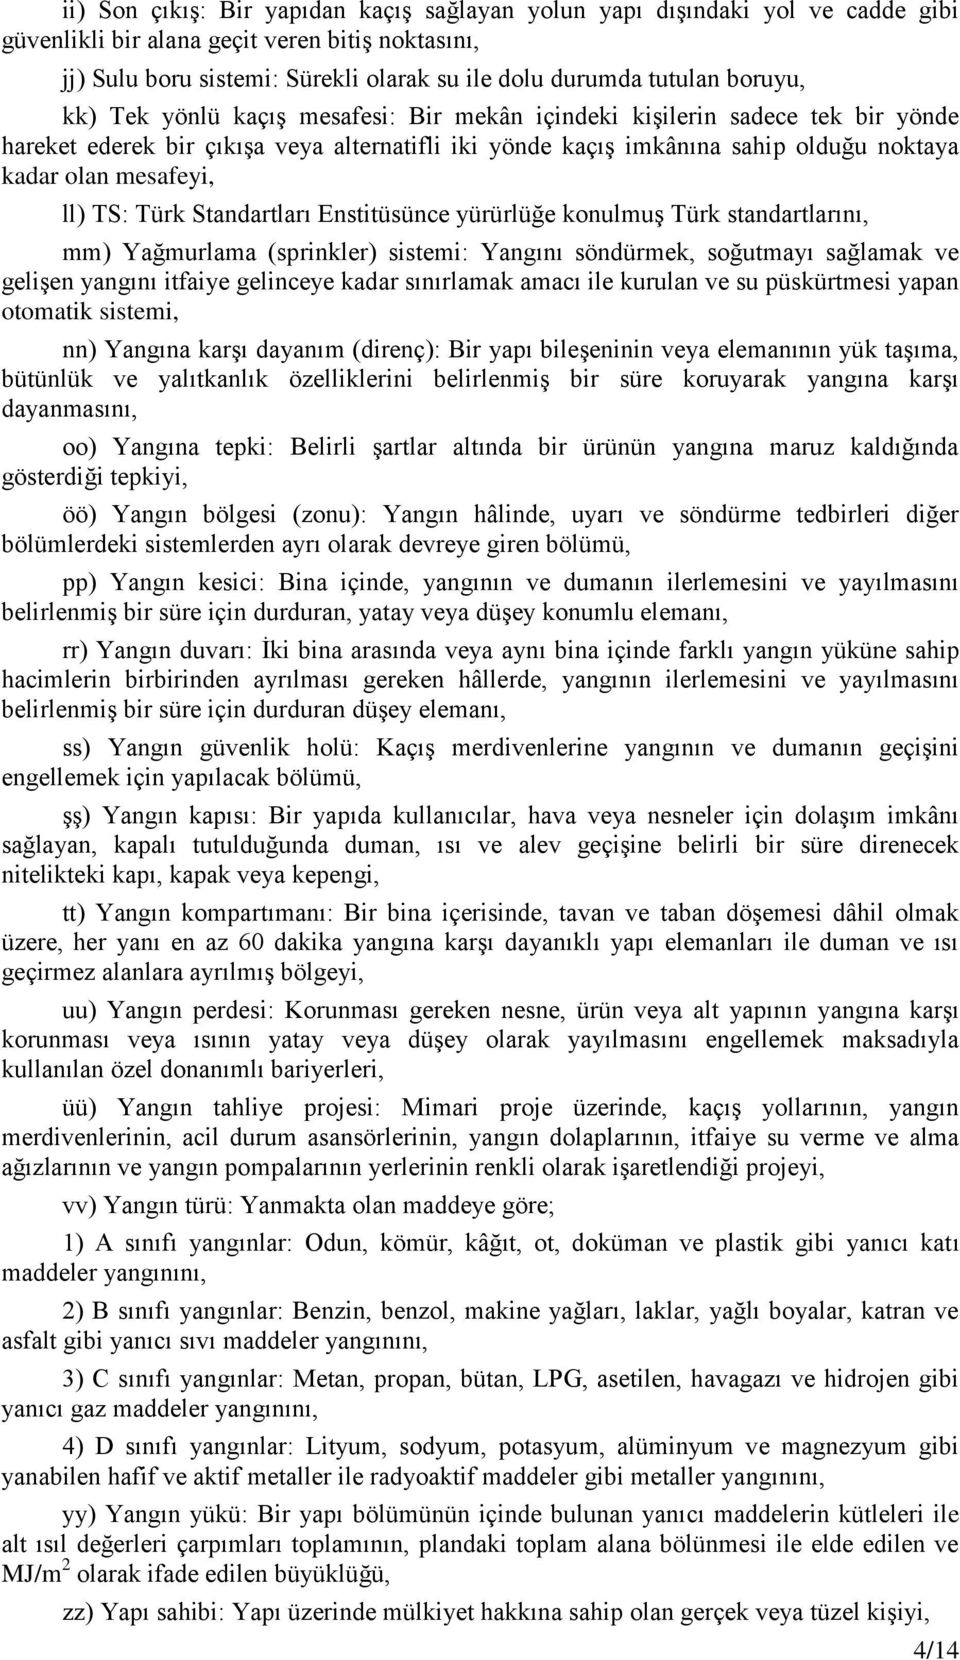 ll) TS: Türk Standartları Enstitüsünce yürürlüğe konulmuş Türk standartlarını, mm) Yağmurlama (sprinkler) sistemi: Yangını söndürmek, soğutmayı sağlamak ve gelişen yangını itfaiye gelinceye kadar